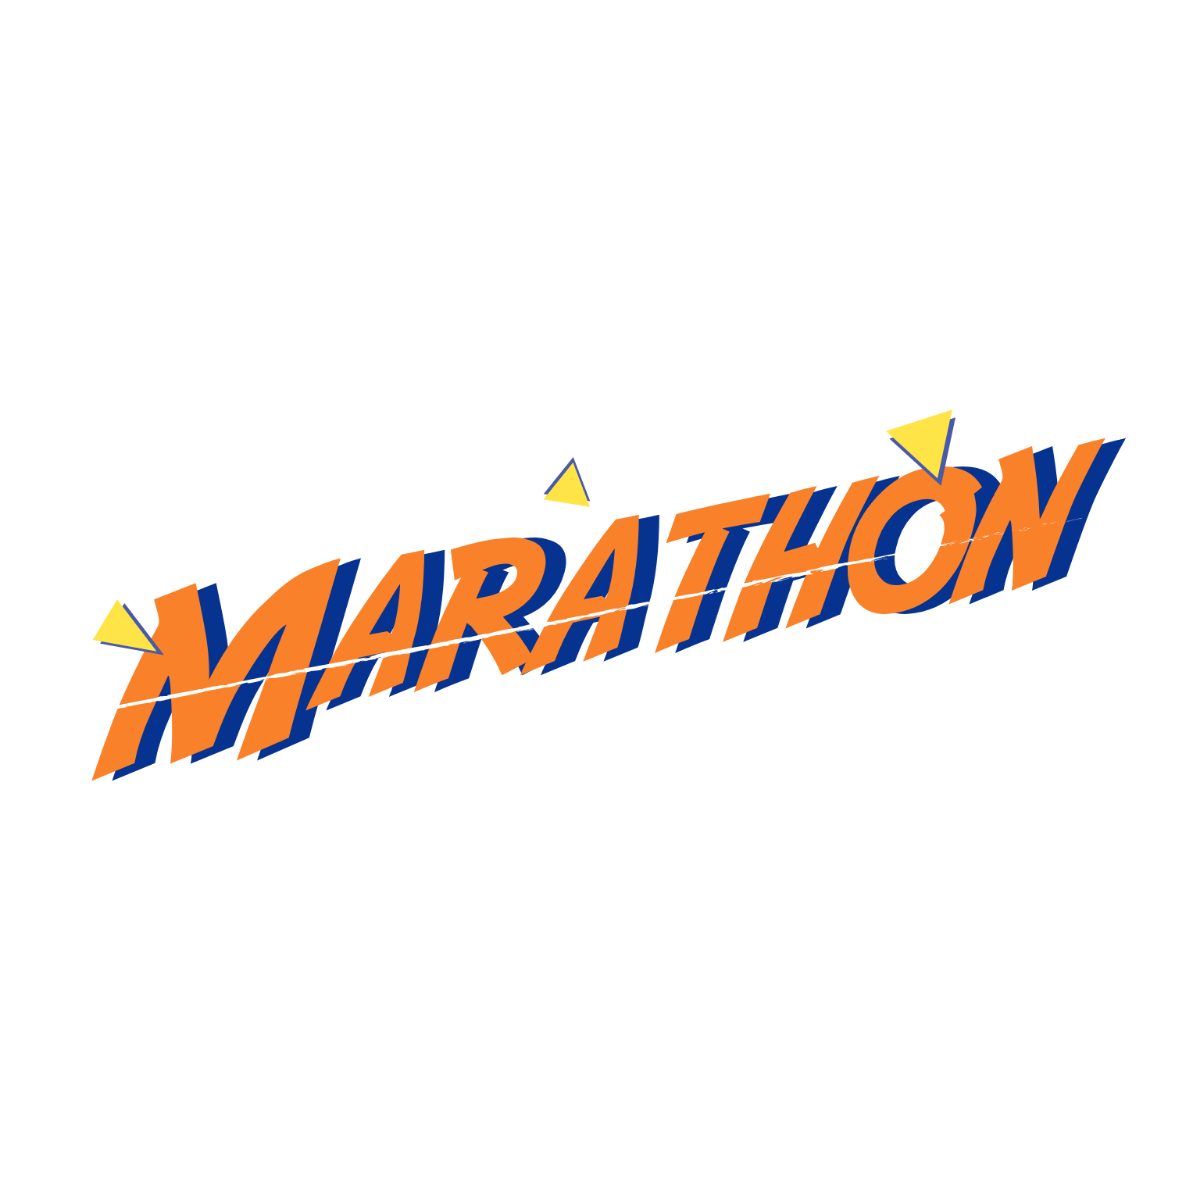 Marathon Text Effect